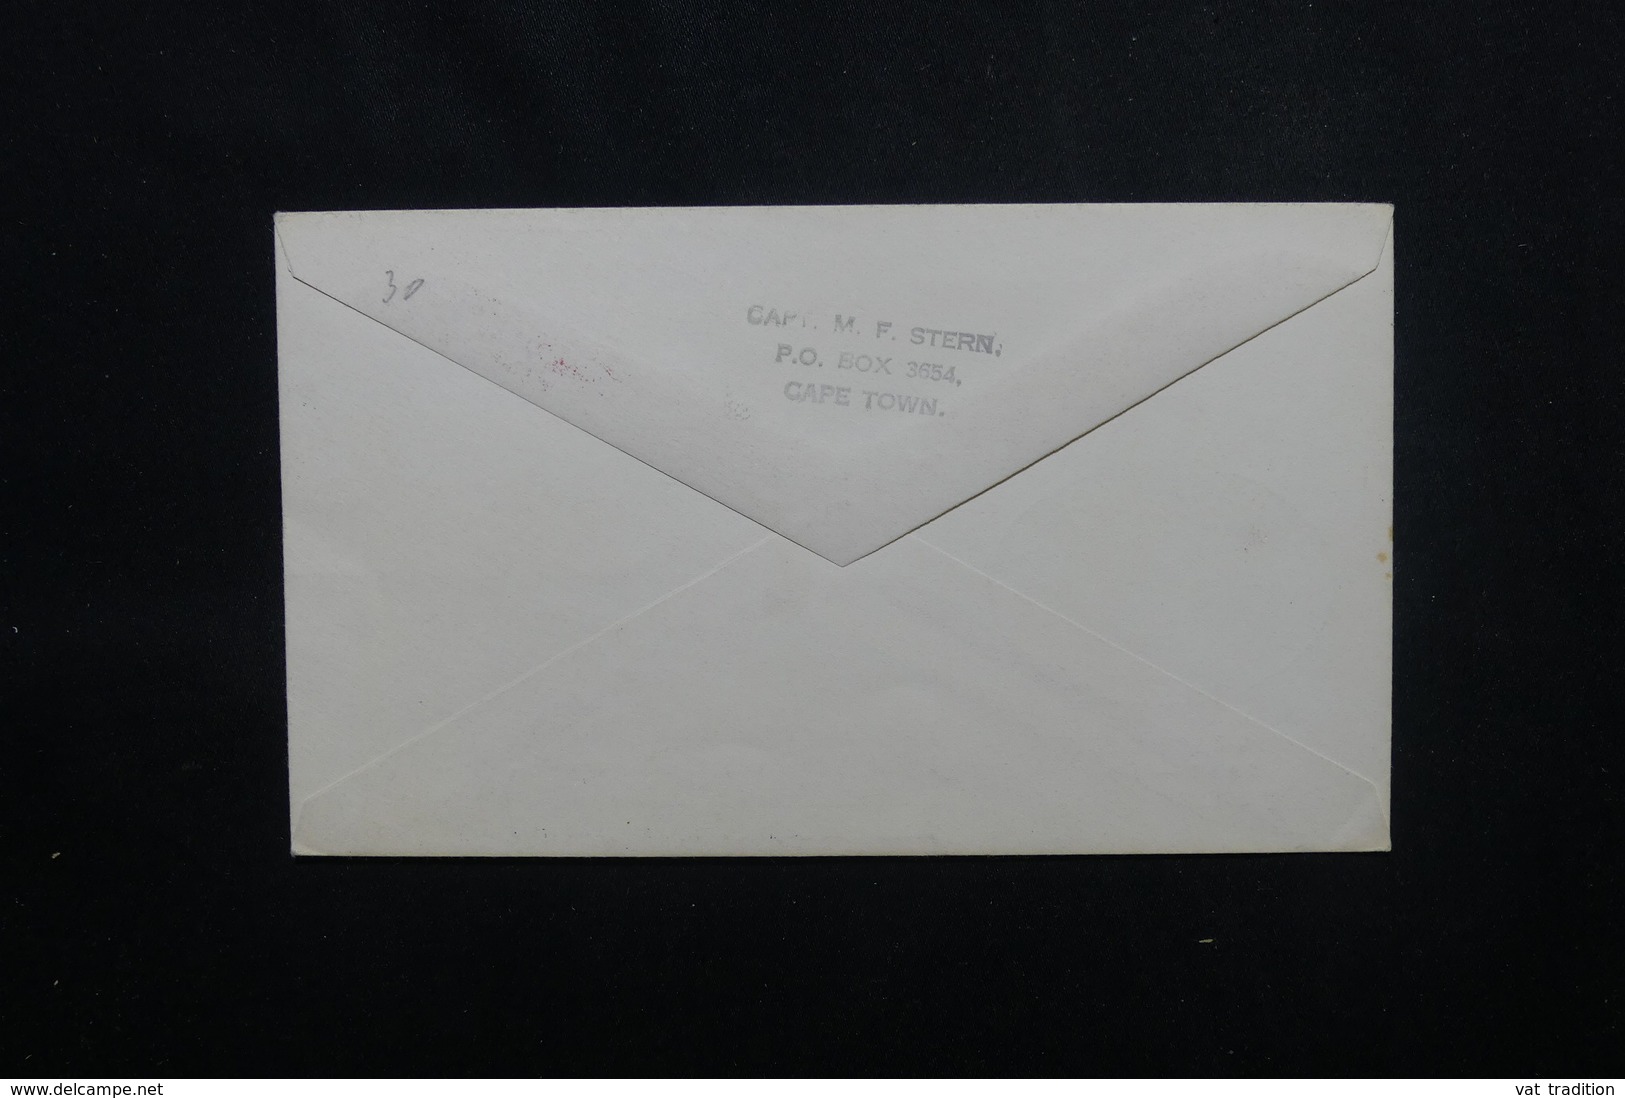 AFRIQUE DU SUD - Enveloppe Du Lions Club Internationale En 1967 - L 54034 - Lettres & Documents